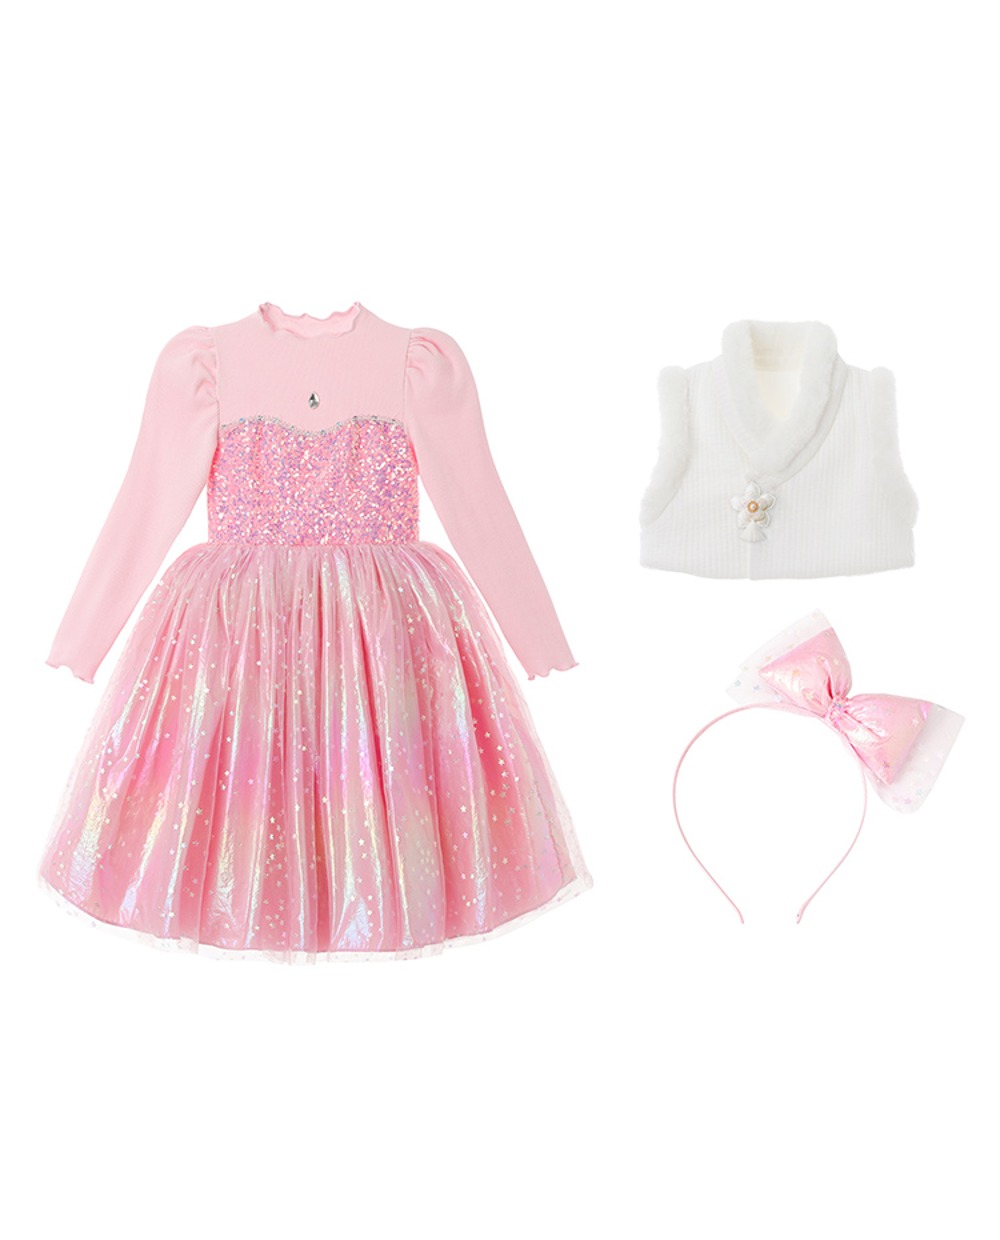 [추석기획] 프리미엄 오로라 공주 튜튜 드레스(Pink) SET